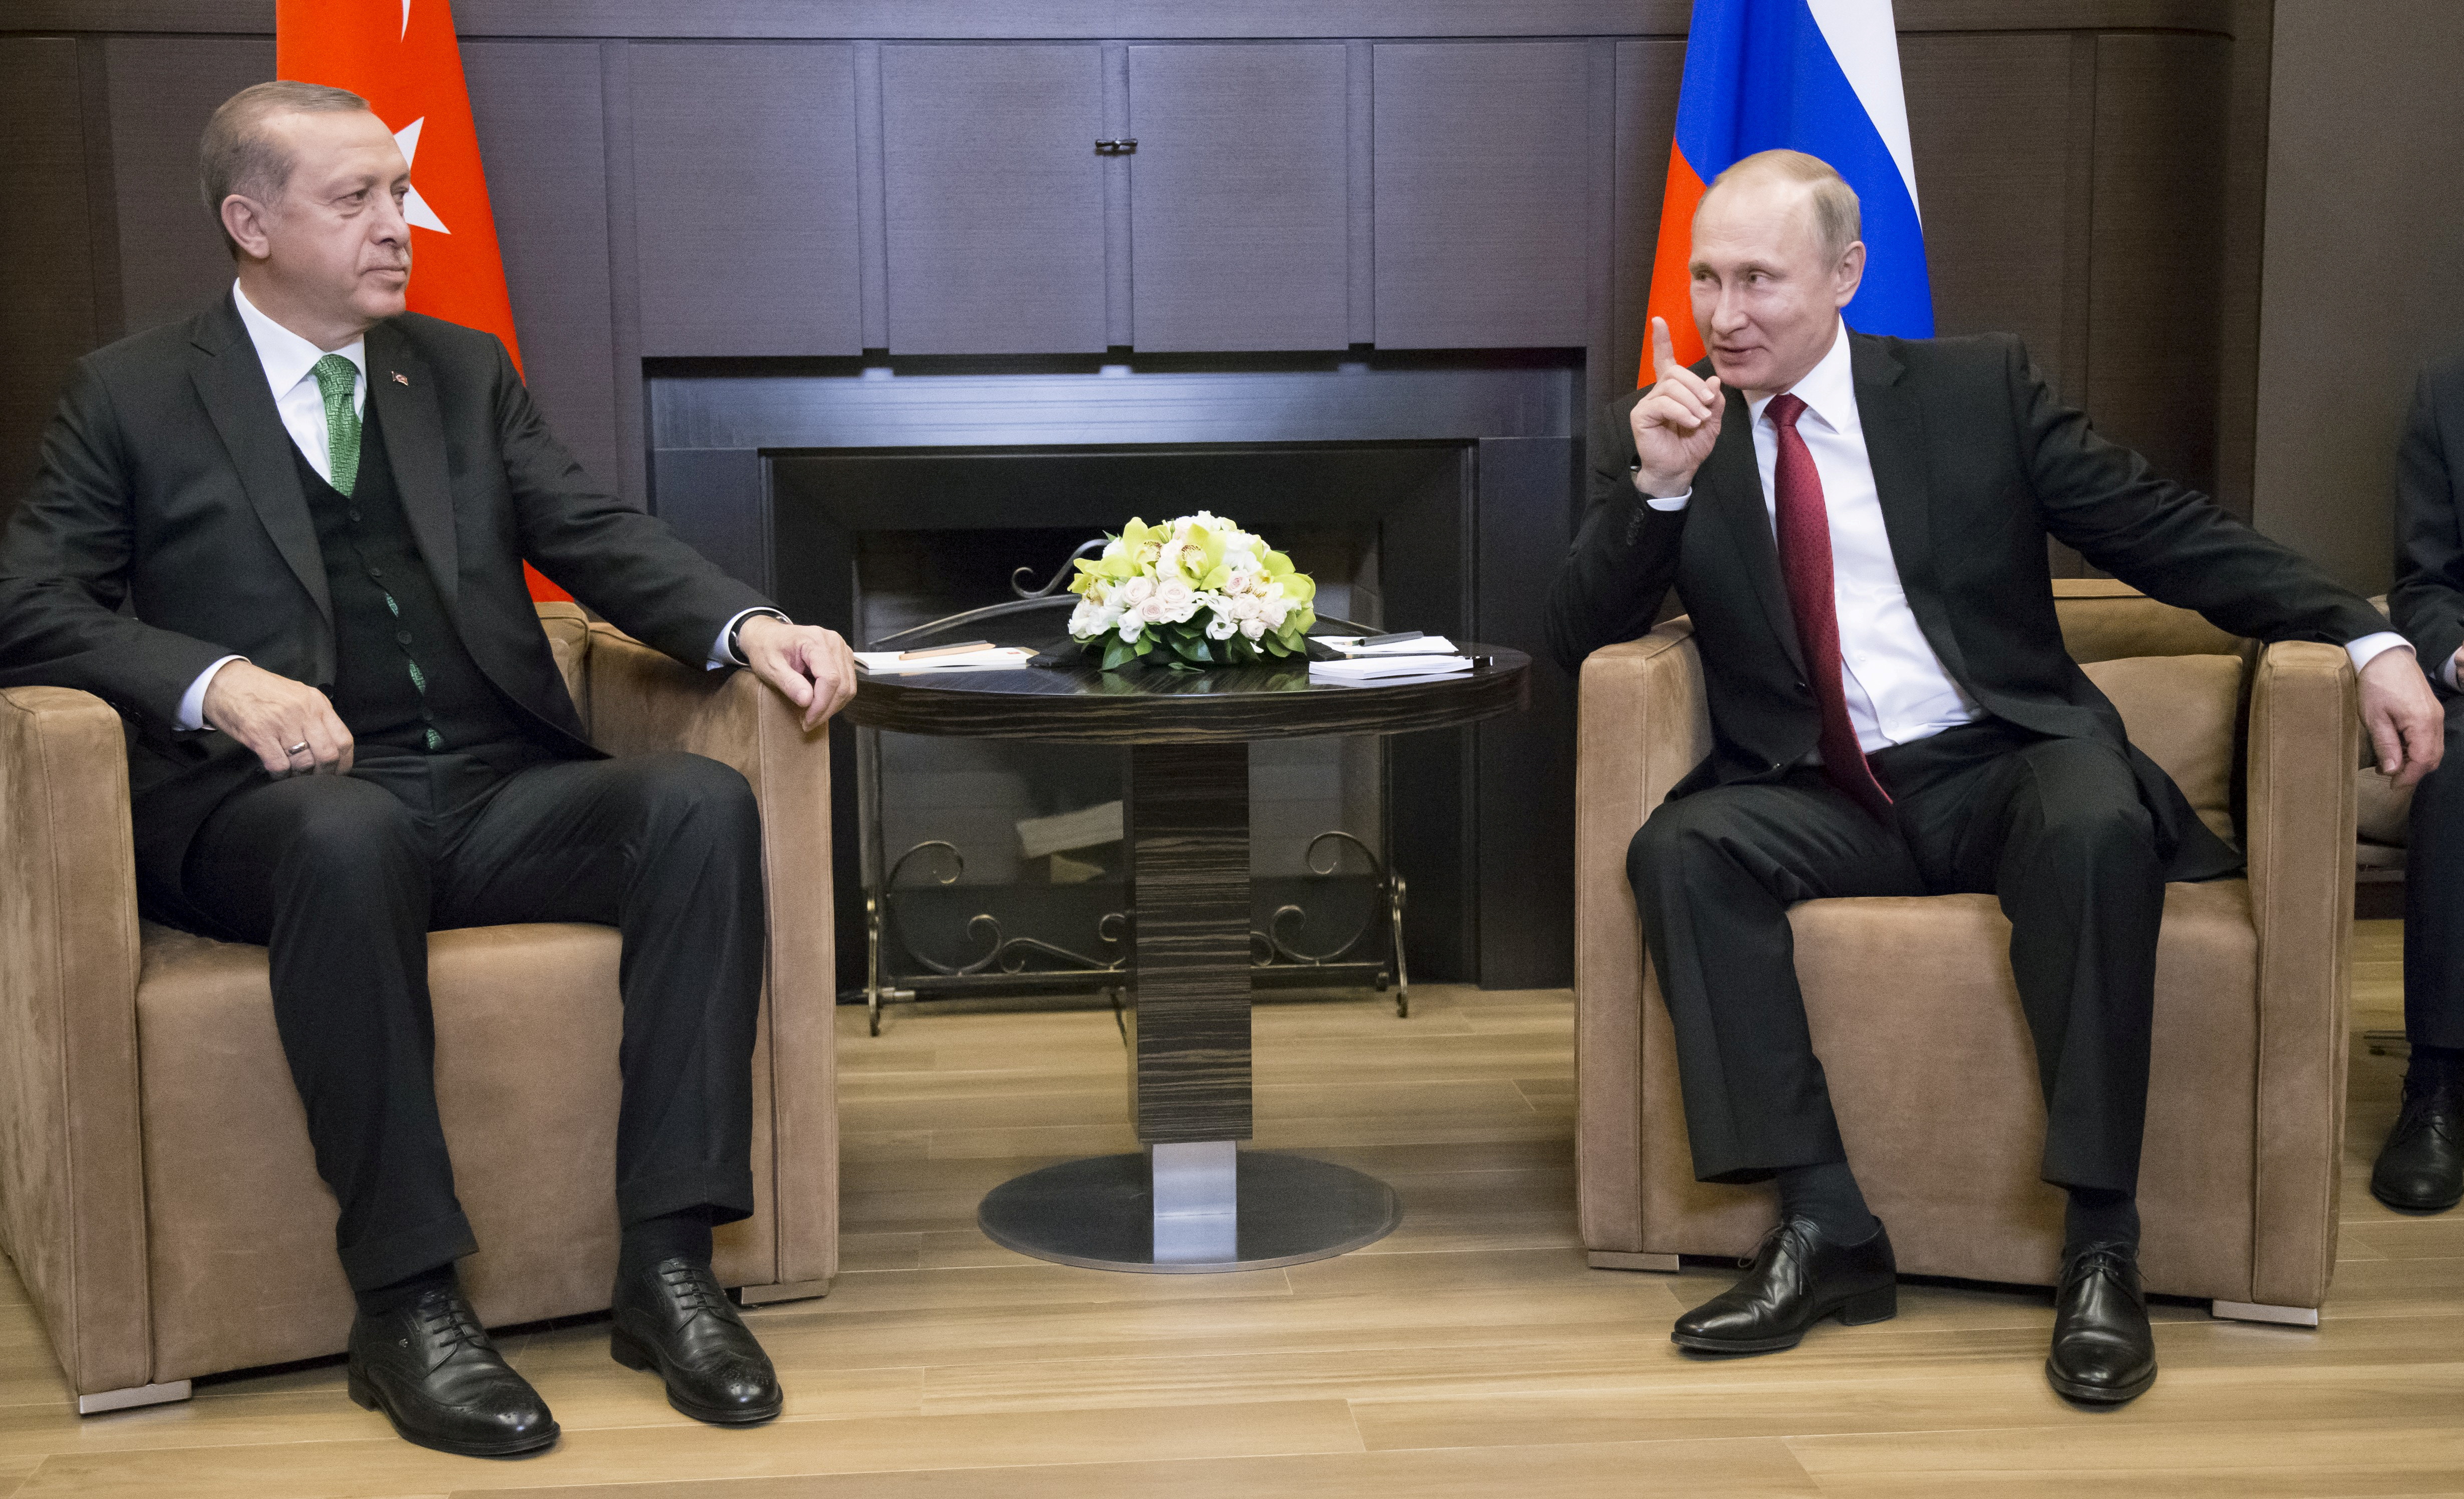 FOTO DE ARCHIVO: El presidente ruso Vladimir Putin (derecha) se reúne con su homólogo turco Tayyip Erdogan en Sochi, Rusia, el 3 de mayo de 2017. REUTERS/Alexander Zemlianichenko/Pool//Foto de archivo